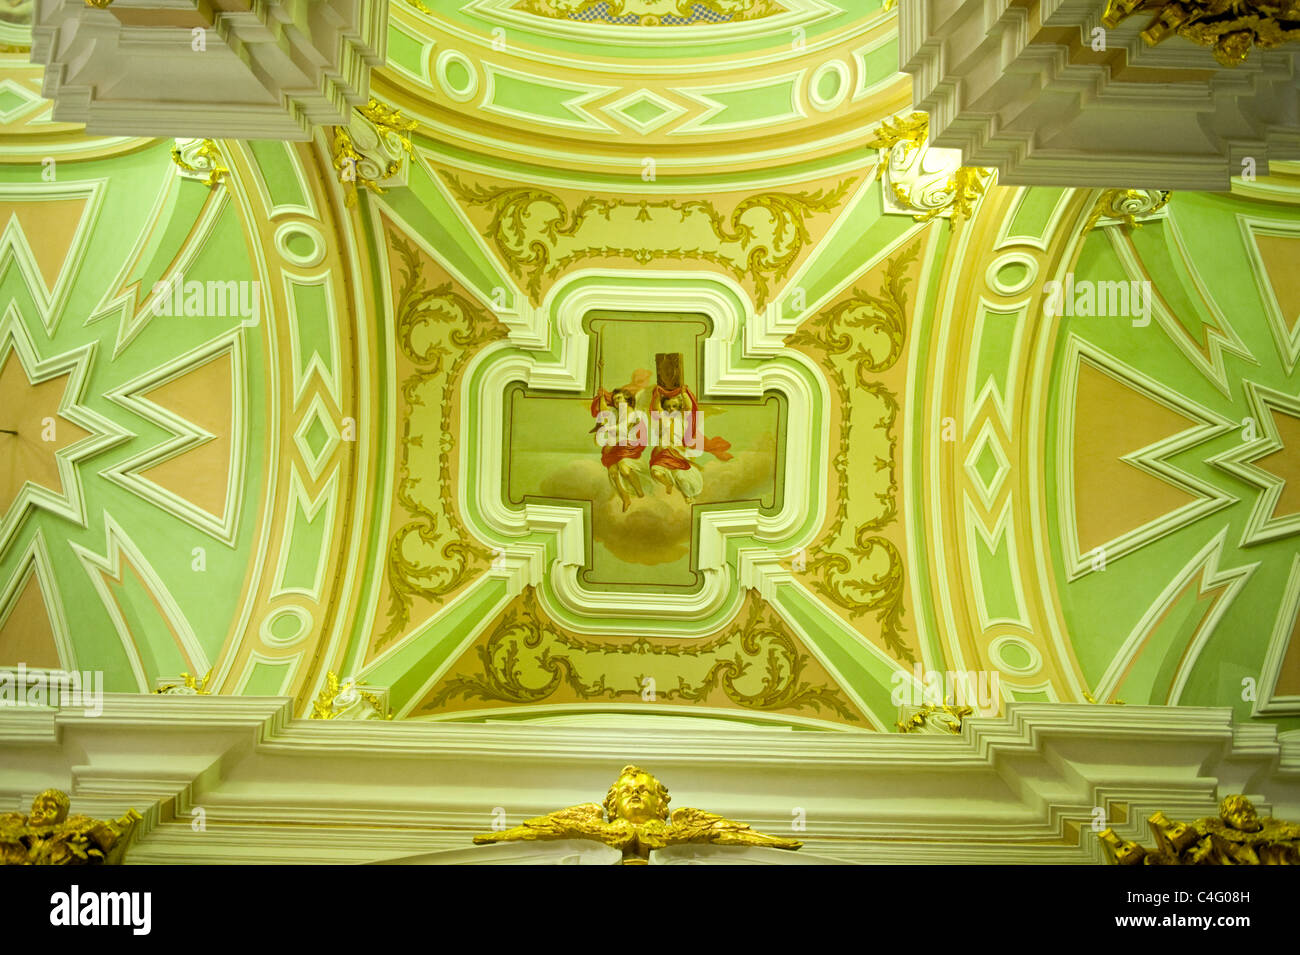 Russie St Petersbourg Cathédrale de SS Peter & Paul baroque construit 1733 lieu de repos des tsars Romanov Sobor Petropavlovskiy Banque D'Images